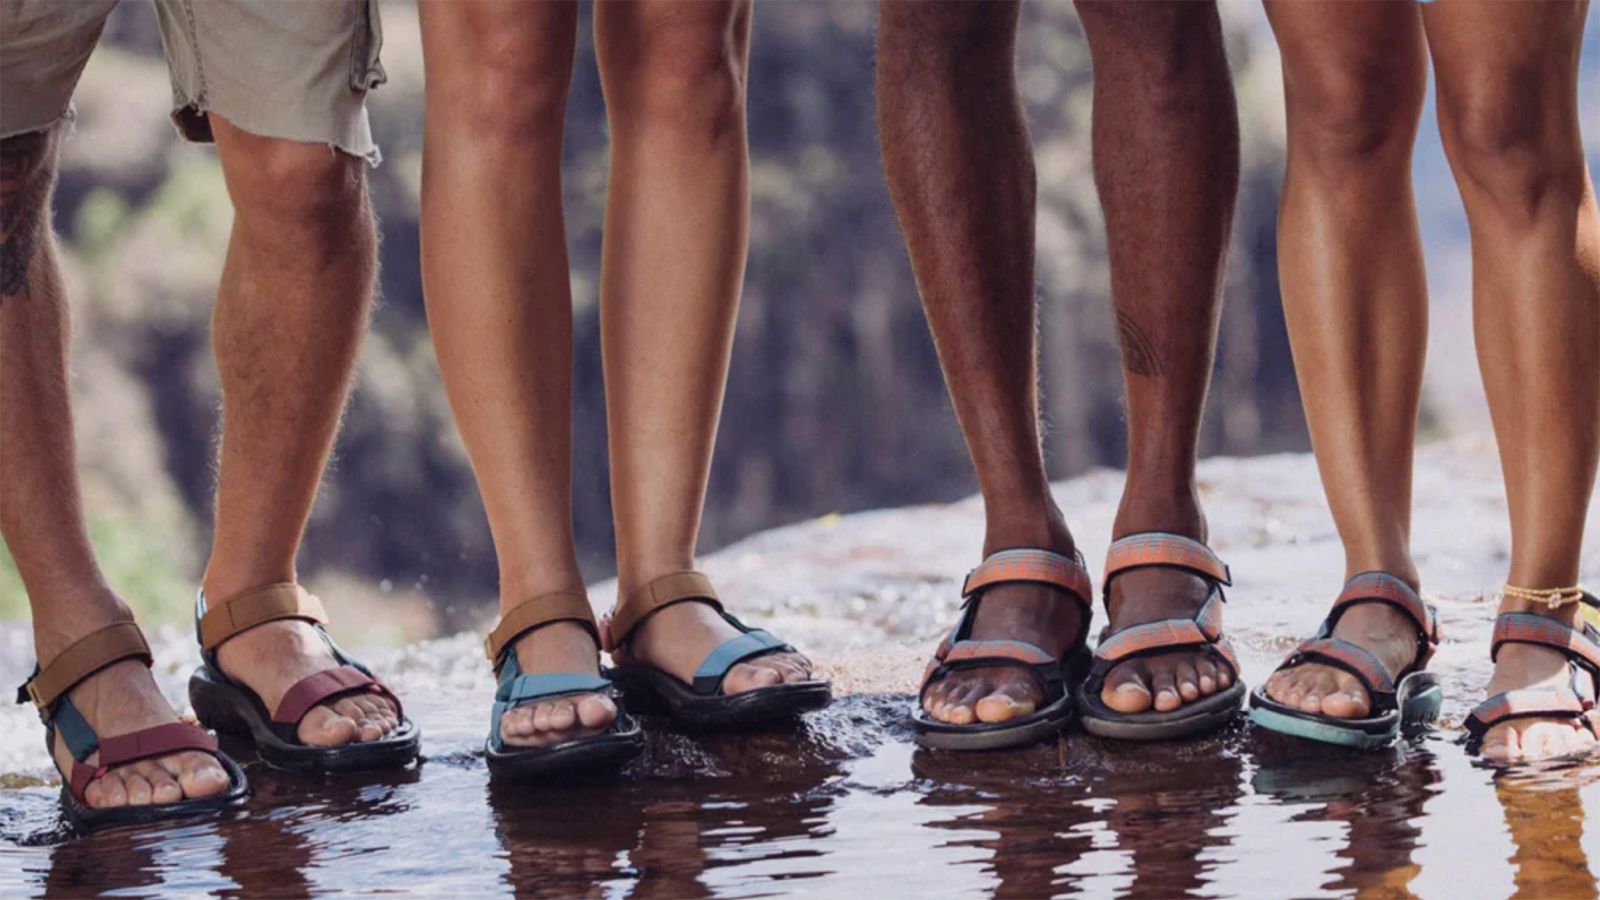 Black V-Thong Foam Shower Sandals